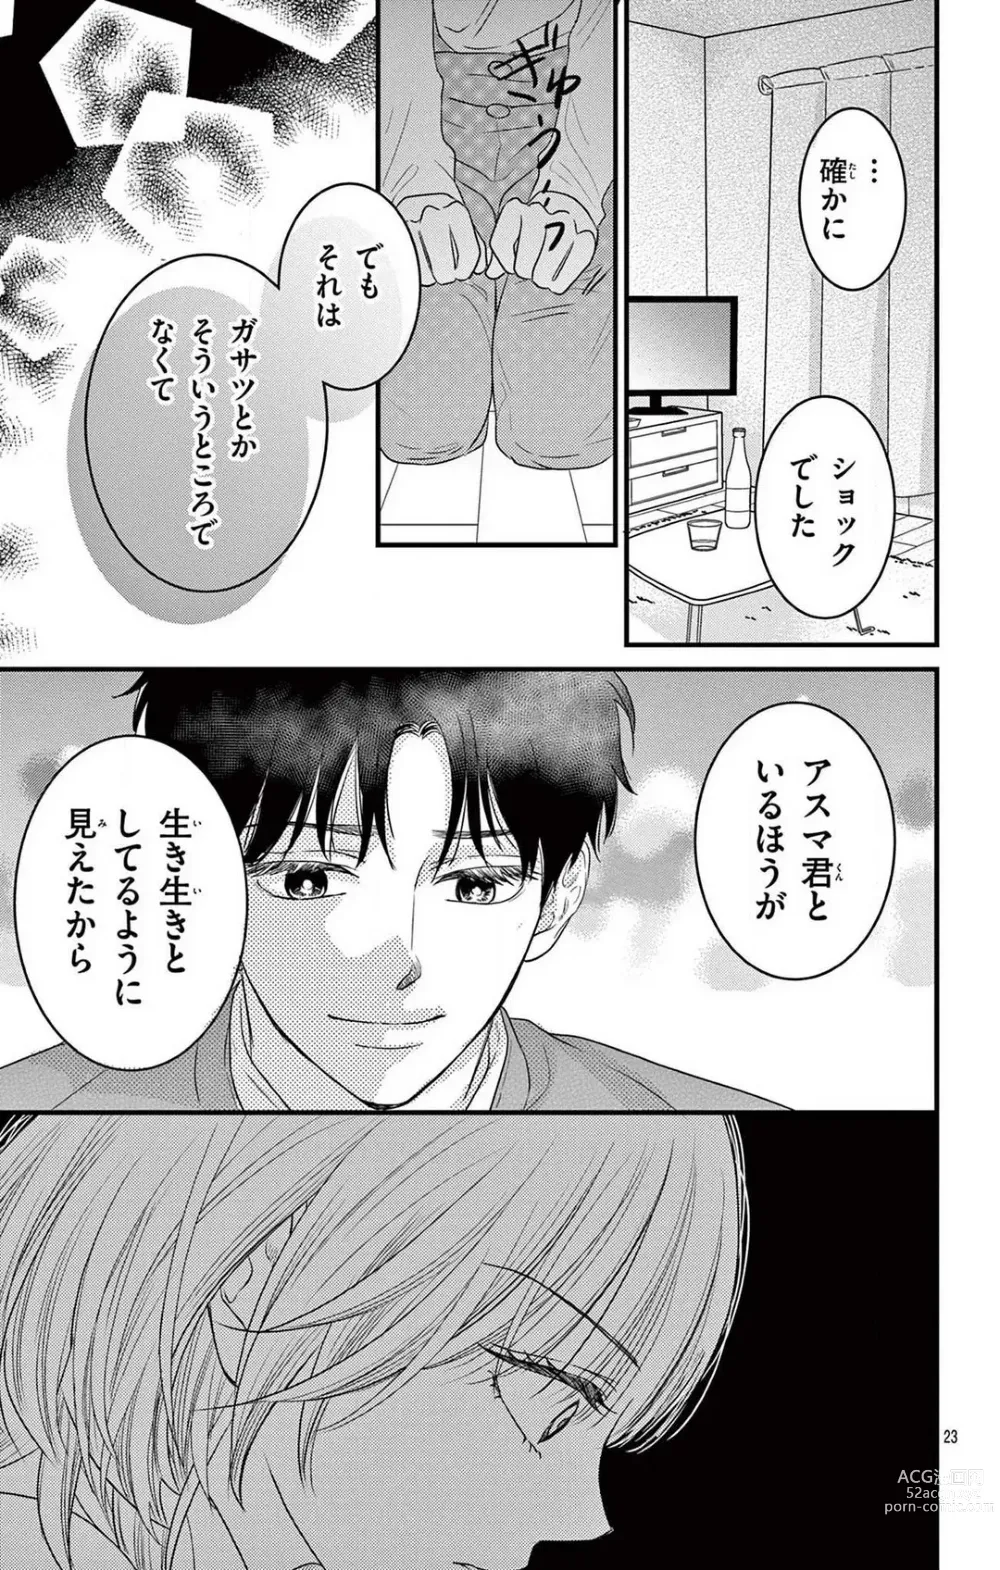 Page 229 of manga Kuzu wa Kuzu Demo Kao ga ii Kuzu 1-7